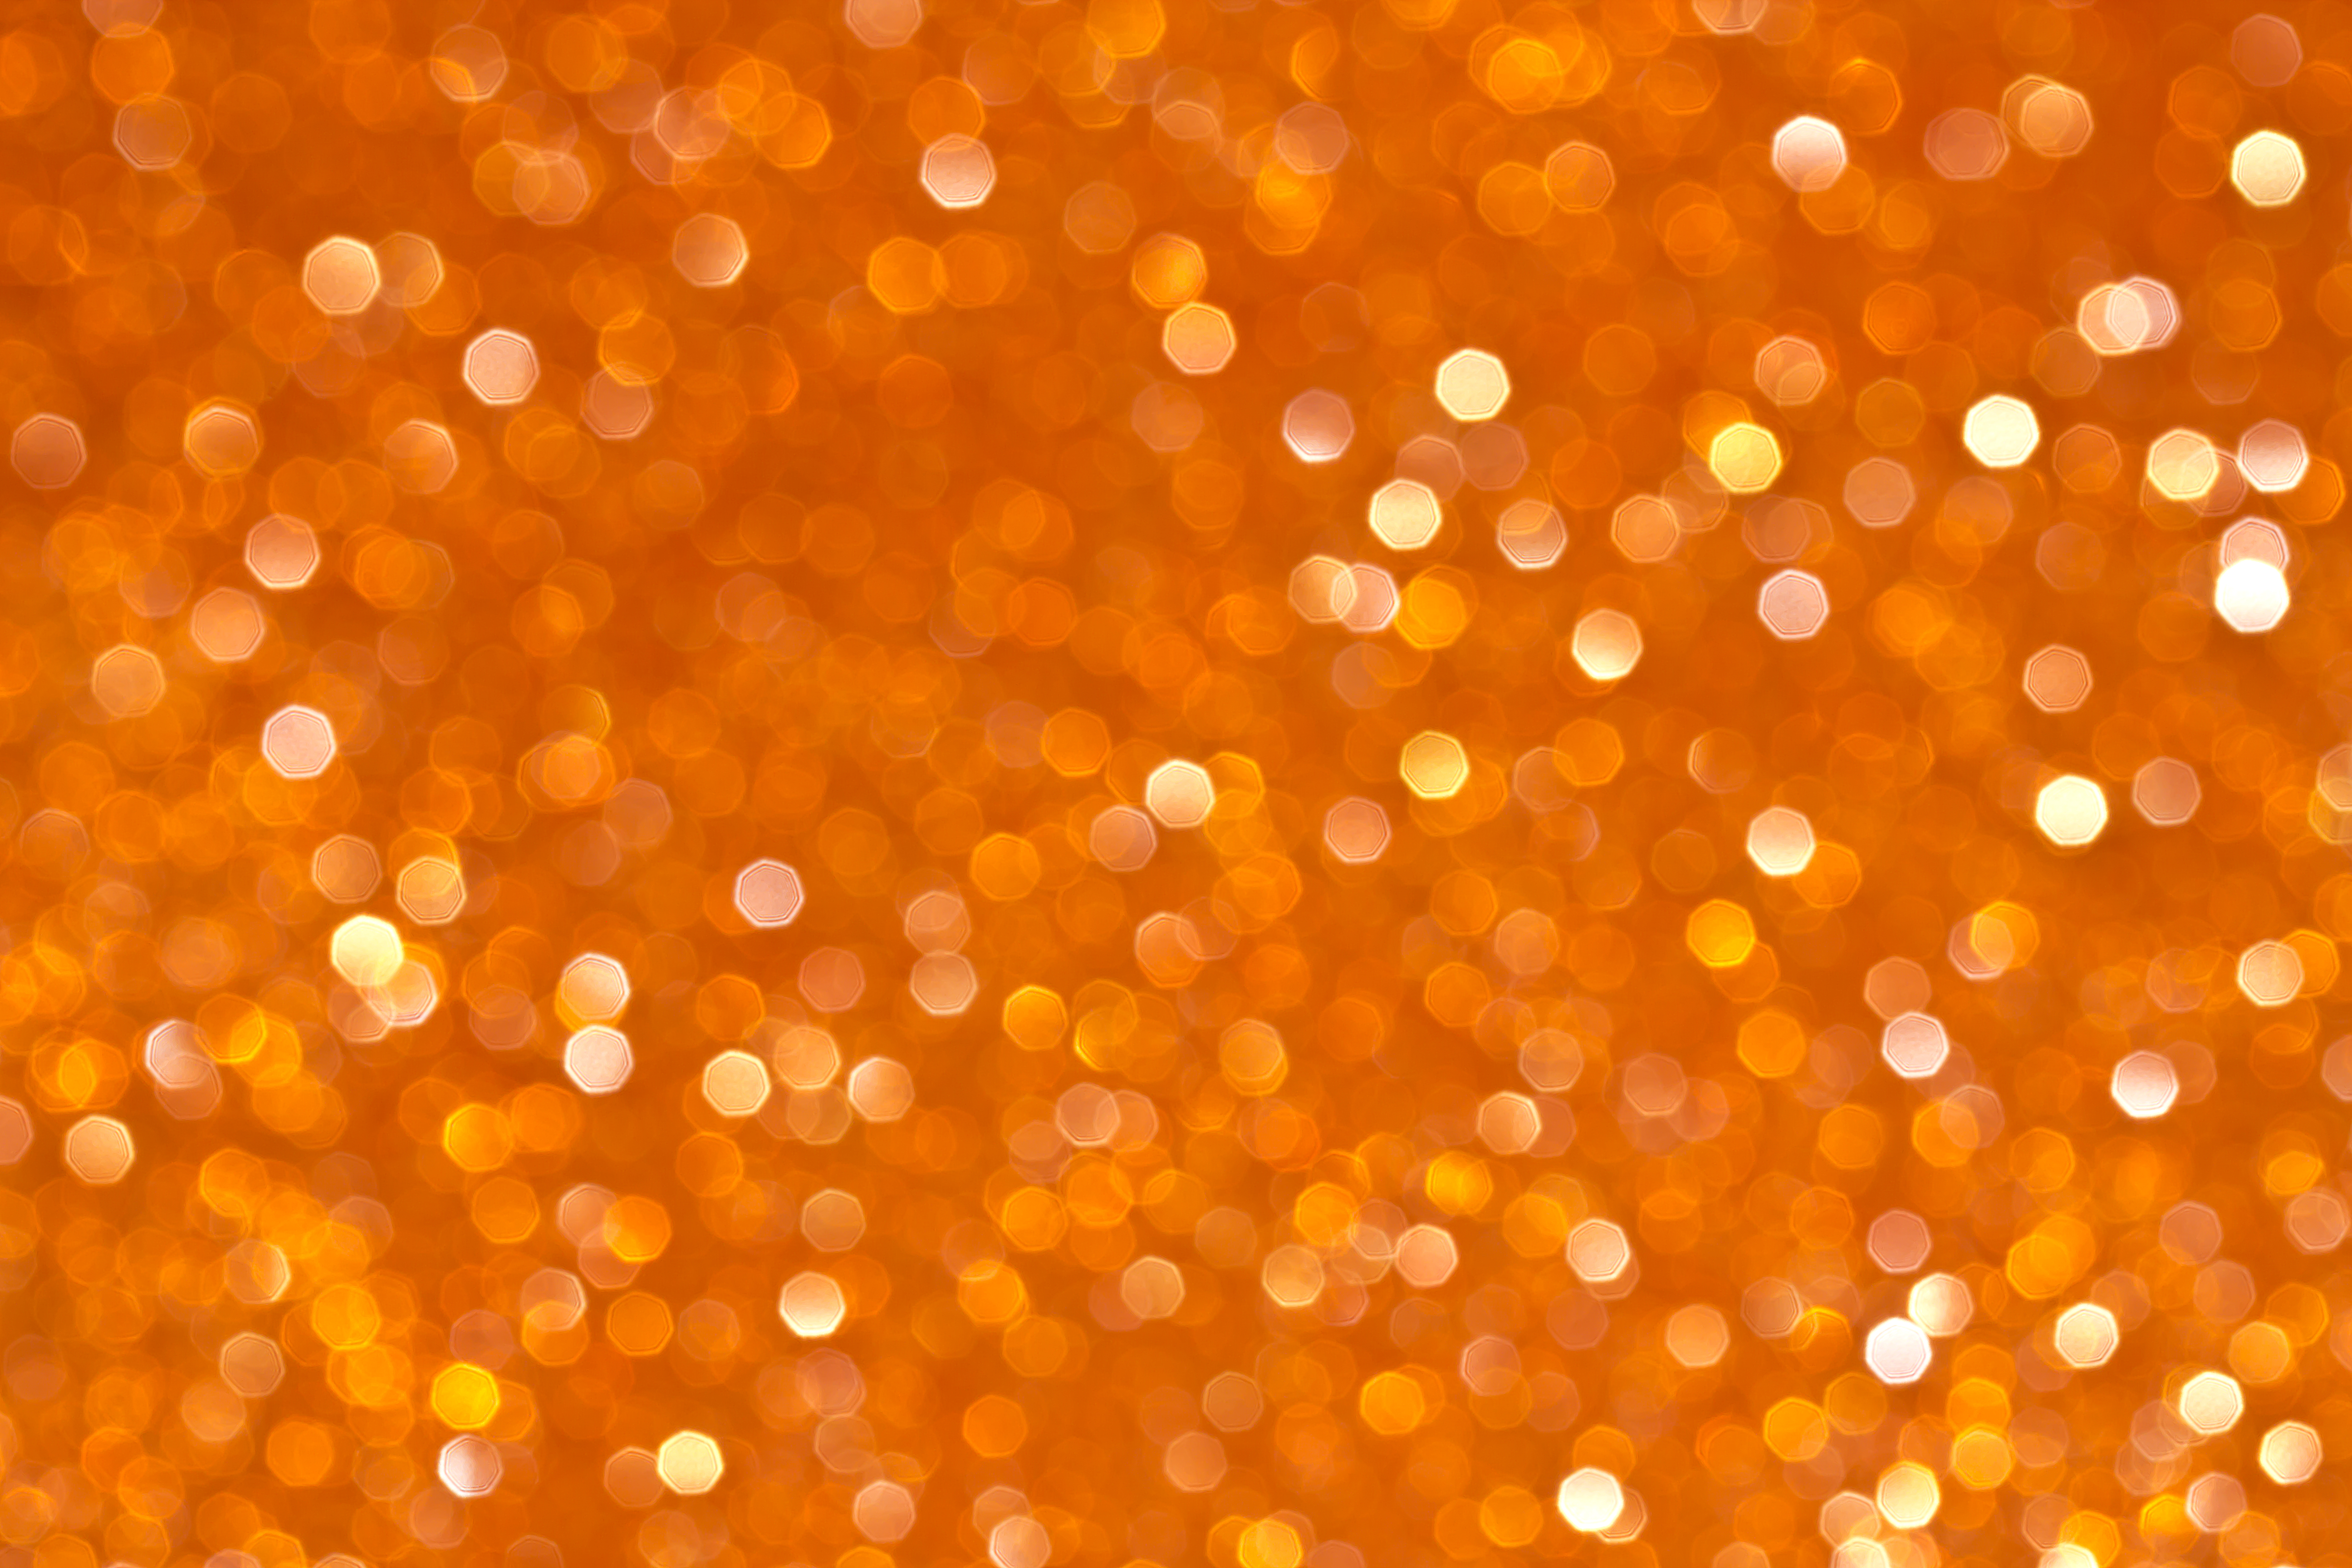 Популярные заставки и фоны Оранжевый на компьютер